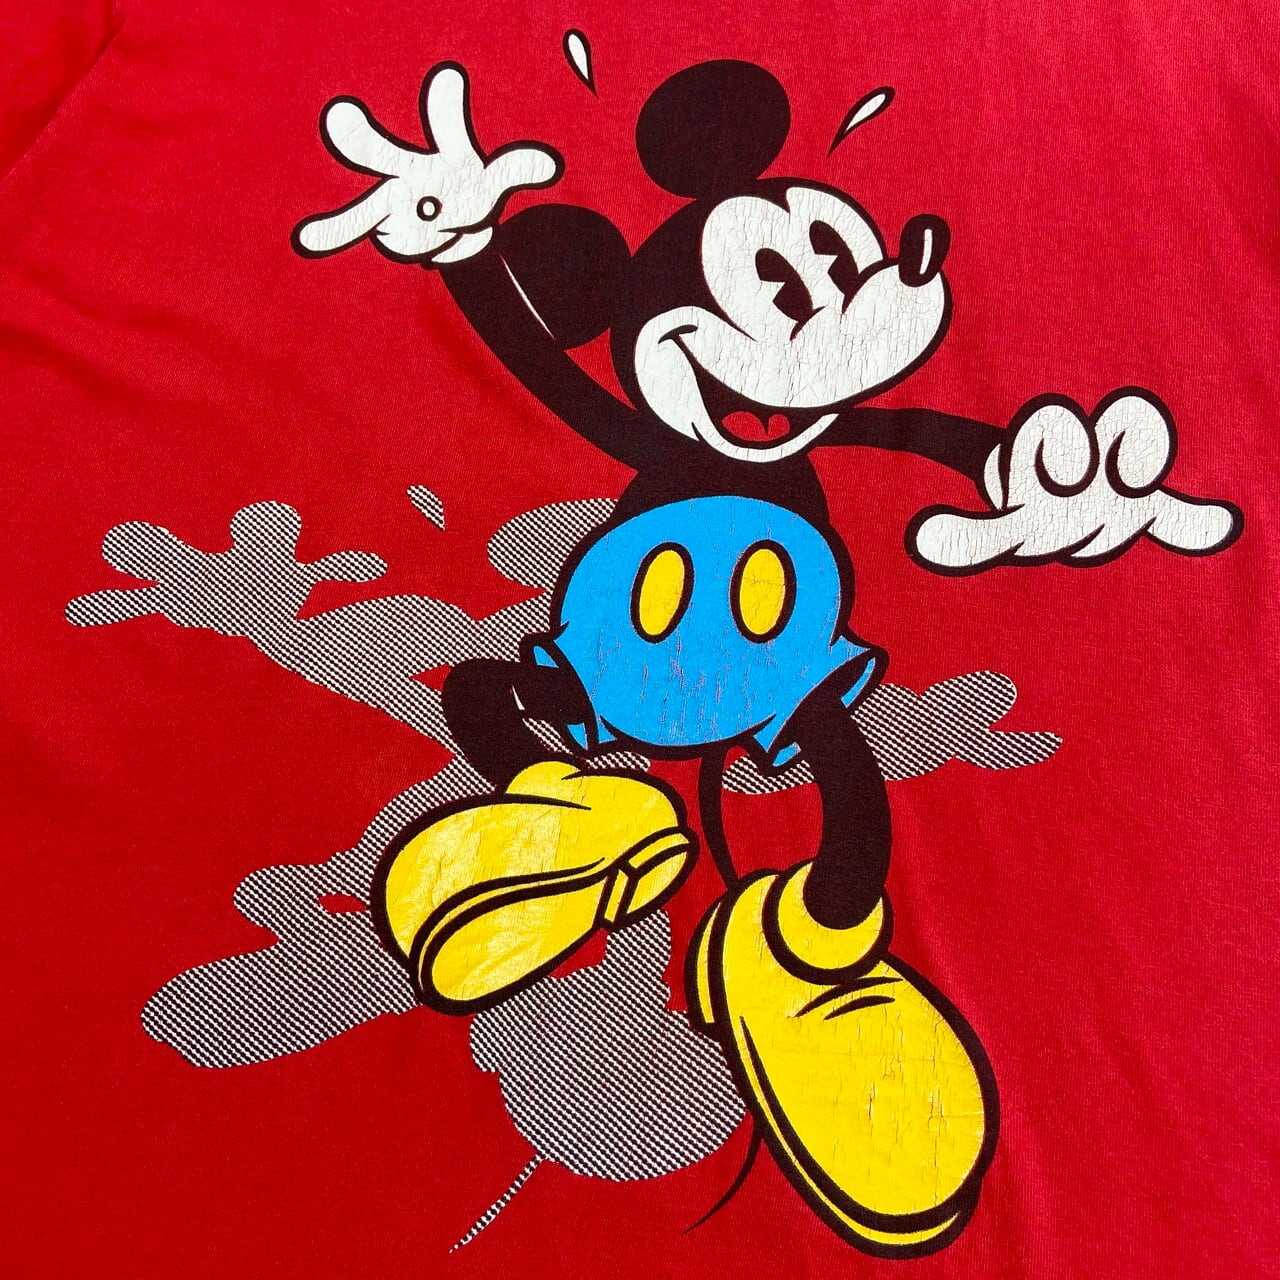 90年代 Disney ディズニー MICKEY MOUSE ミッキーマウス 青パン プリントTシャツ キャラクターTシャツ メンズXL相当 古着  90s ヴィンテージ ビンテージ レッド 赤色【Tシャツ】【4S-30】 | cave 古着屋【公式】古着通販サイト